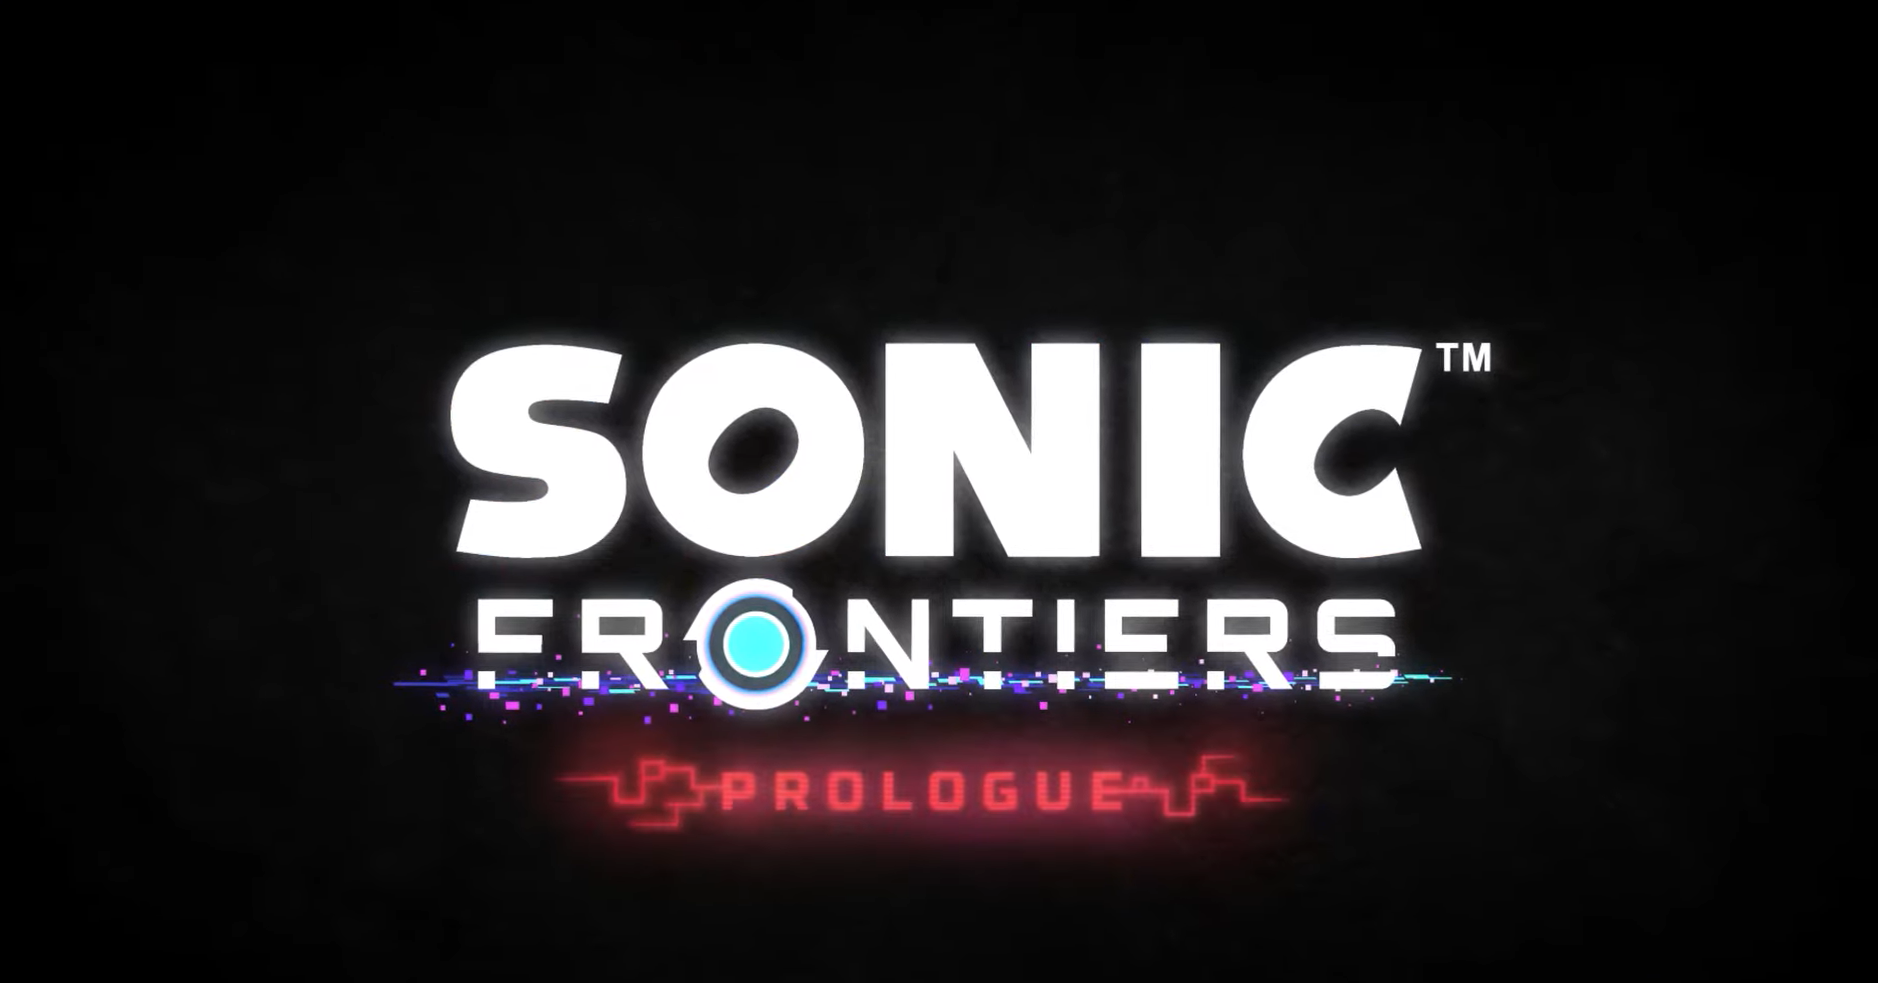 Imagem para Sonic Frontiers: Prologue é uma animação especial com Knuckles